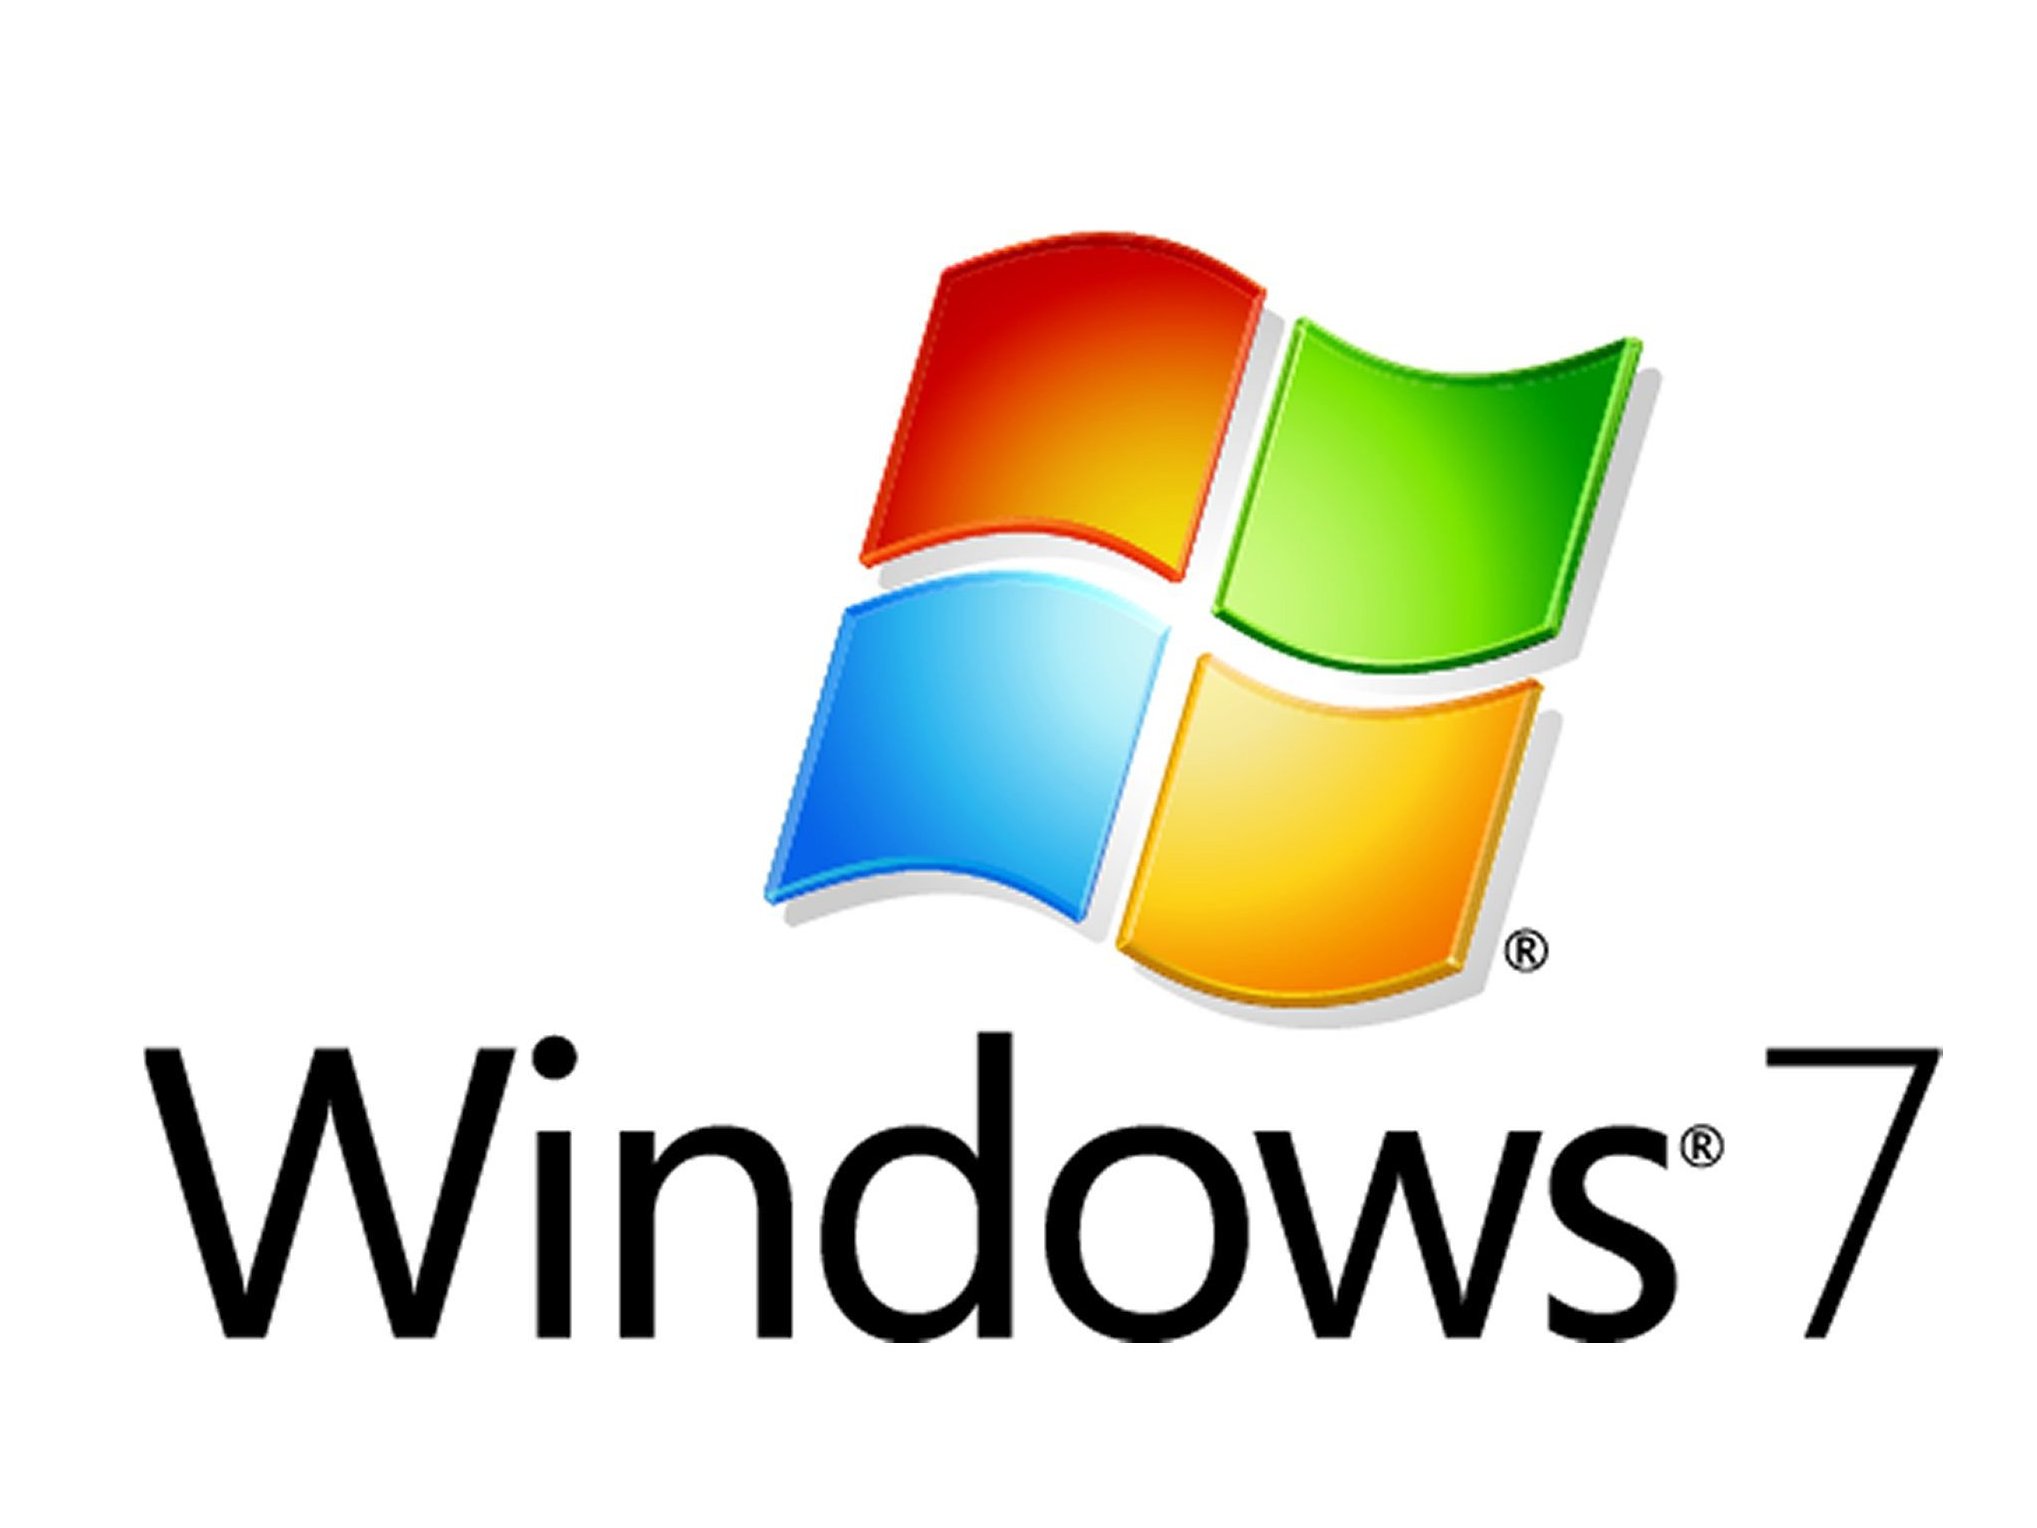 problemas interesantes para probar en Windows 7